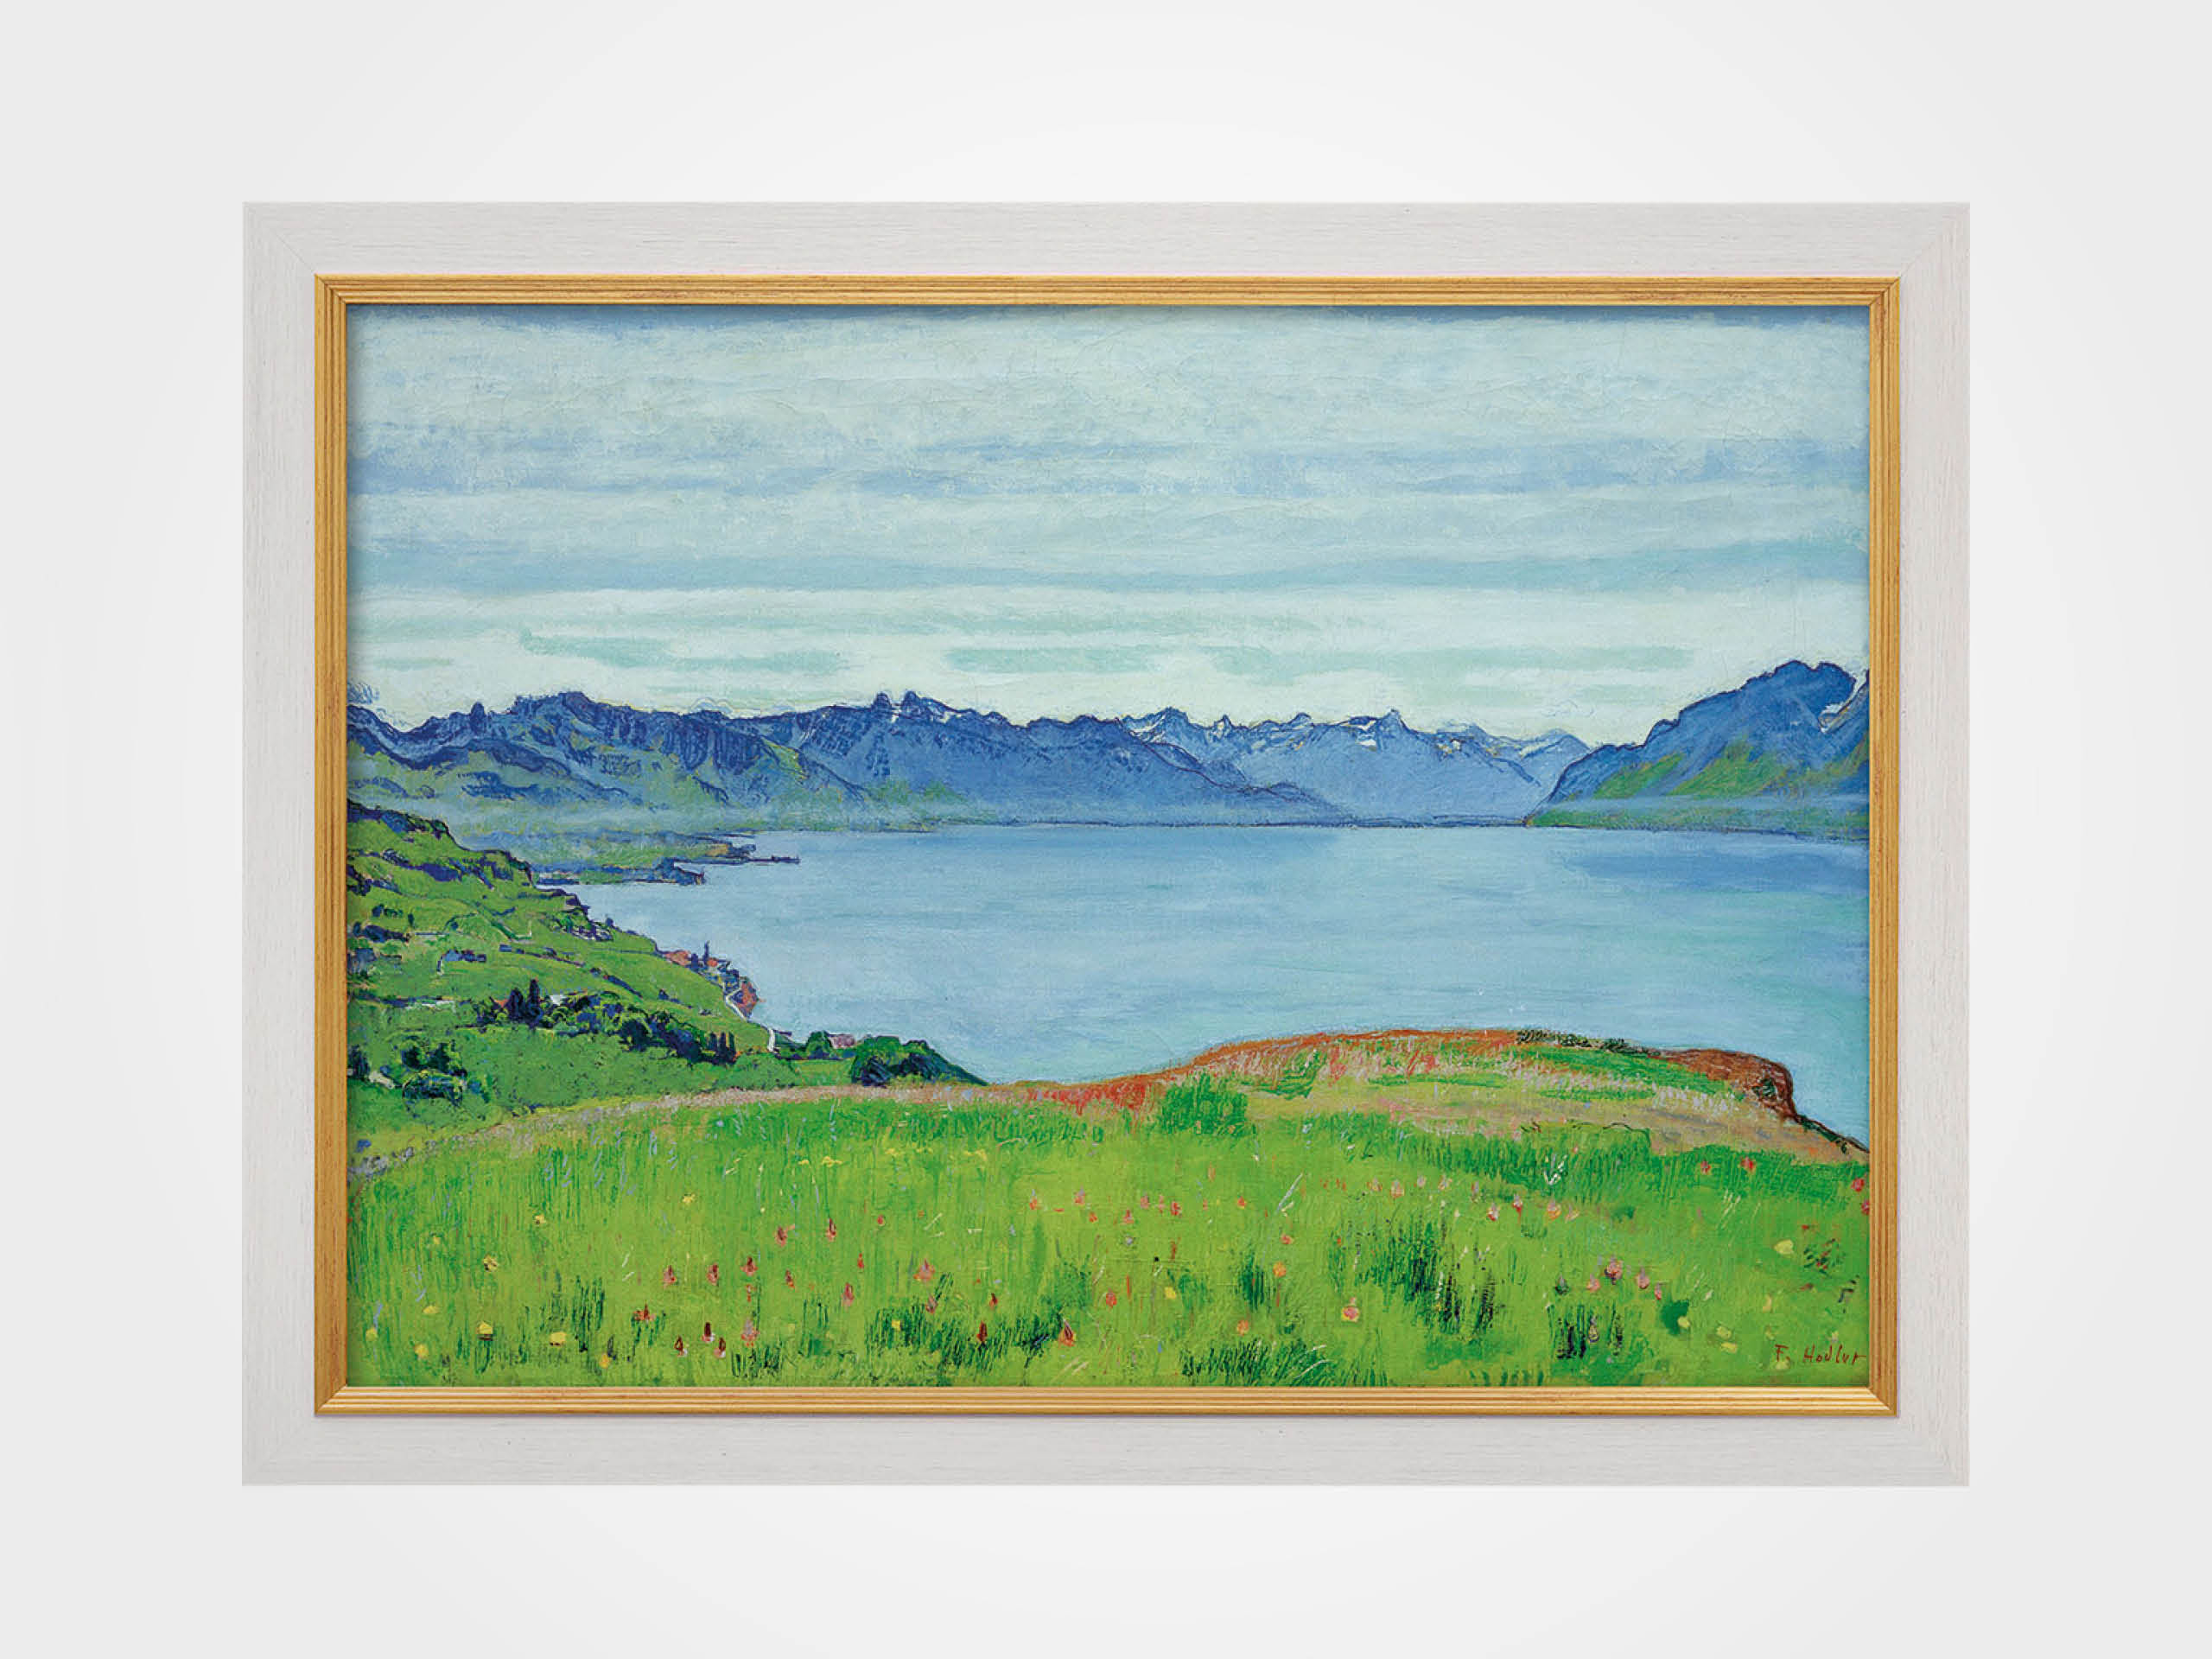 Ferdinand Hodler: Bild "Landschaft am Genfersee mit Blick gegen das Wallis" (1907), gerahmt